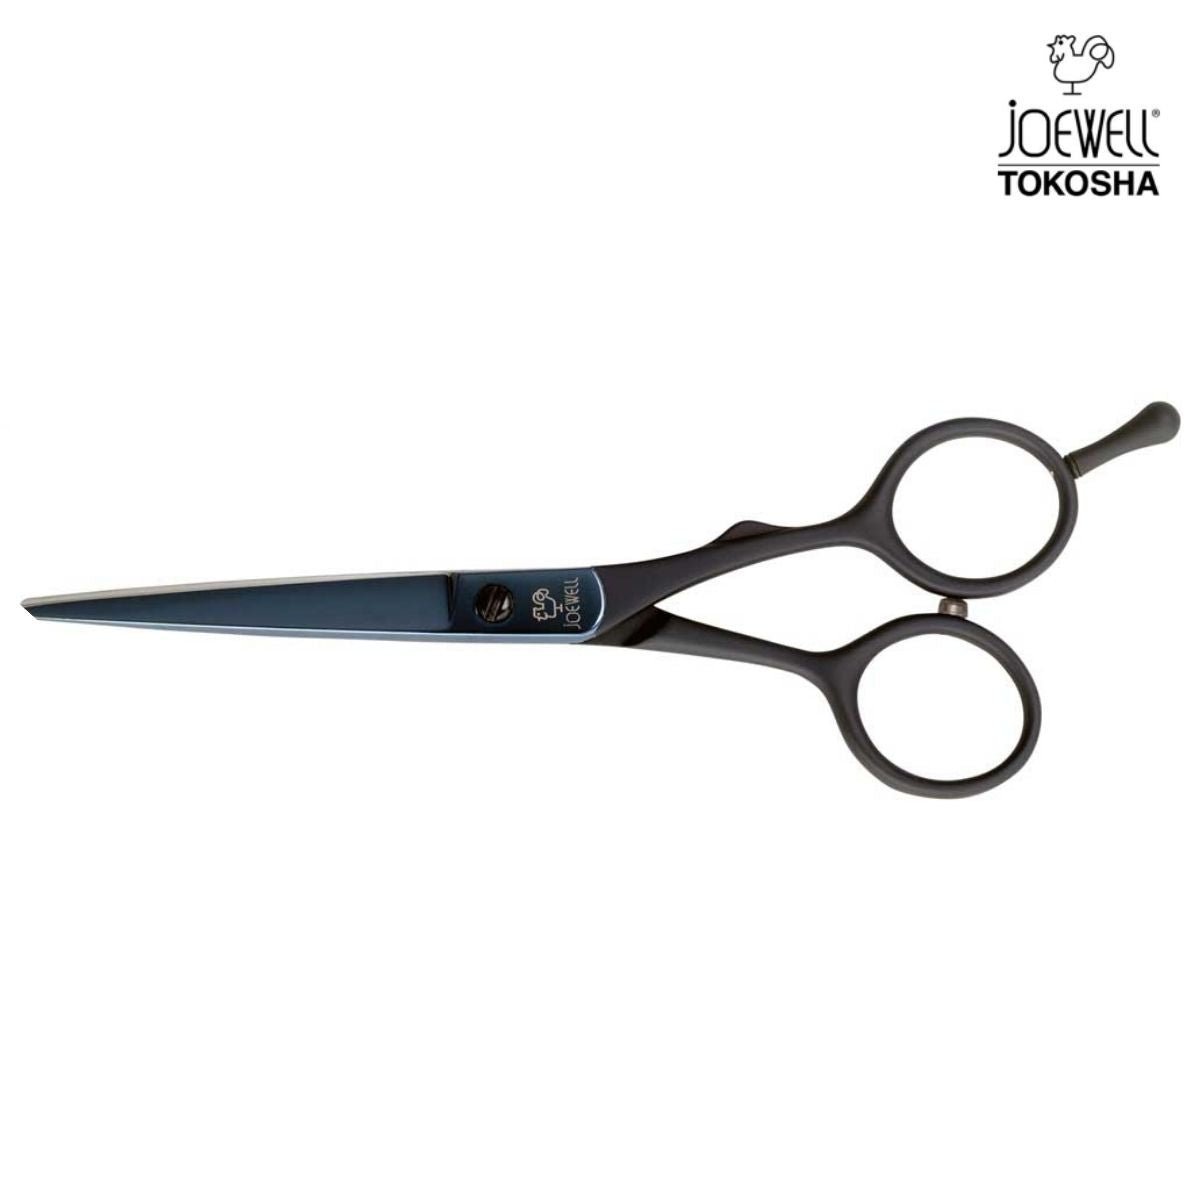 https://www.jpscissors.com/cdn/shop/products/joewell-titanium-tr-hair-cutting-scissors-387370_1200x.jpg?v=1663030366